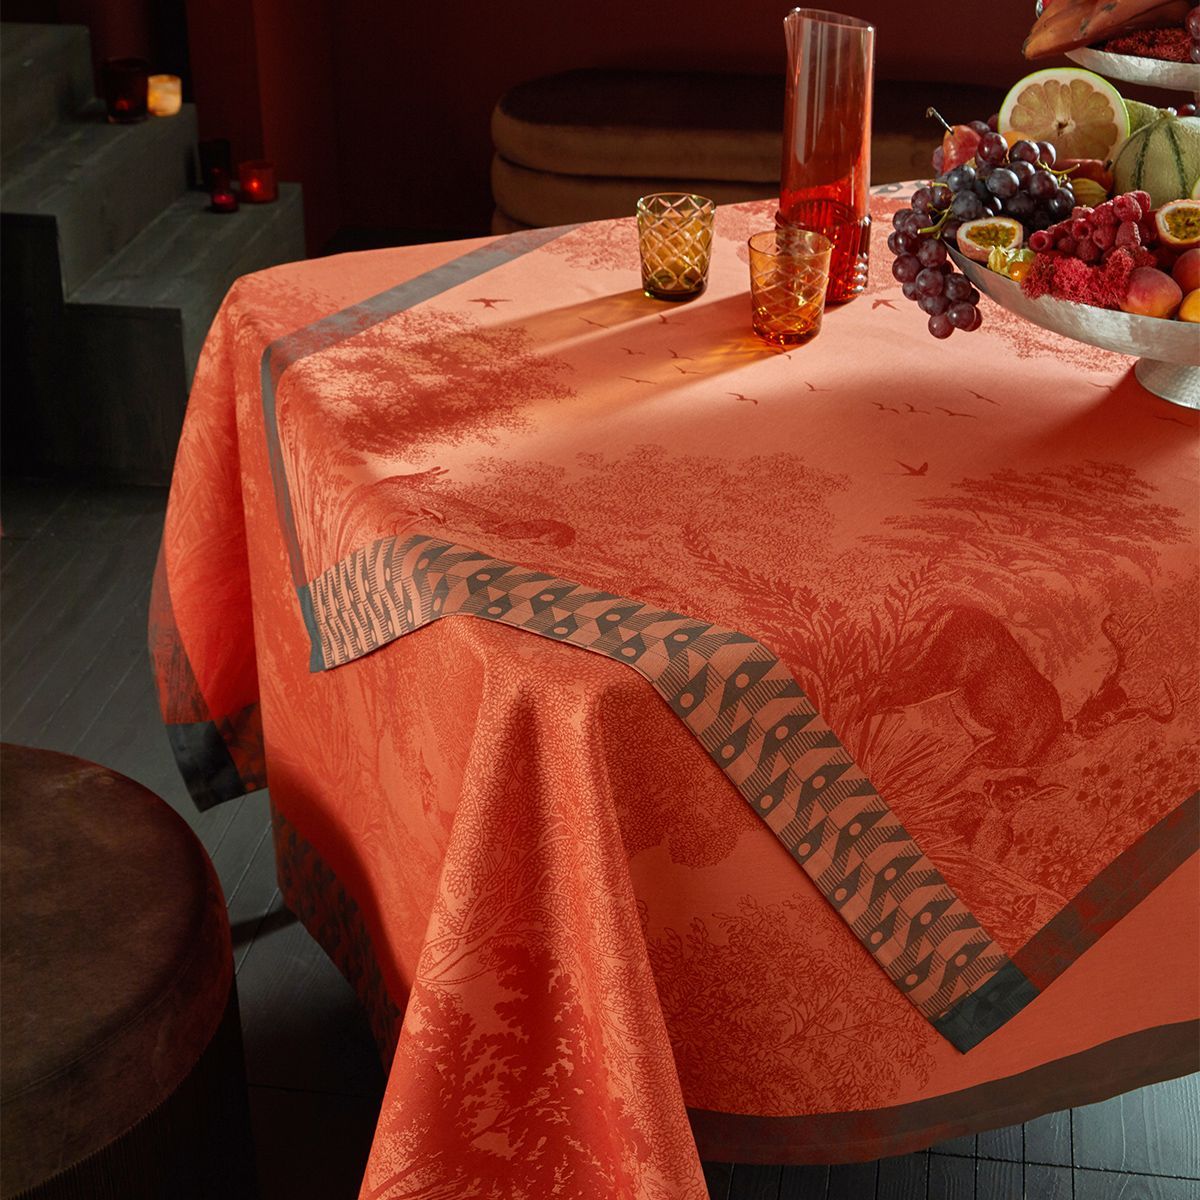 Fig Linens - Foret Enchantee Orange Table Linens by Le Jacquard Français - Close up